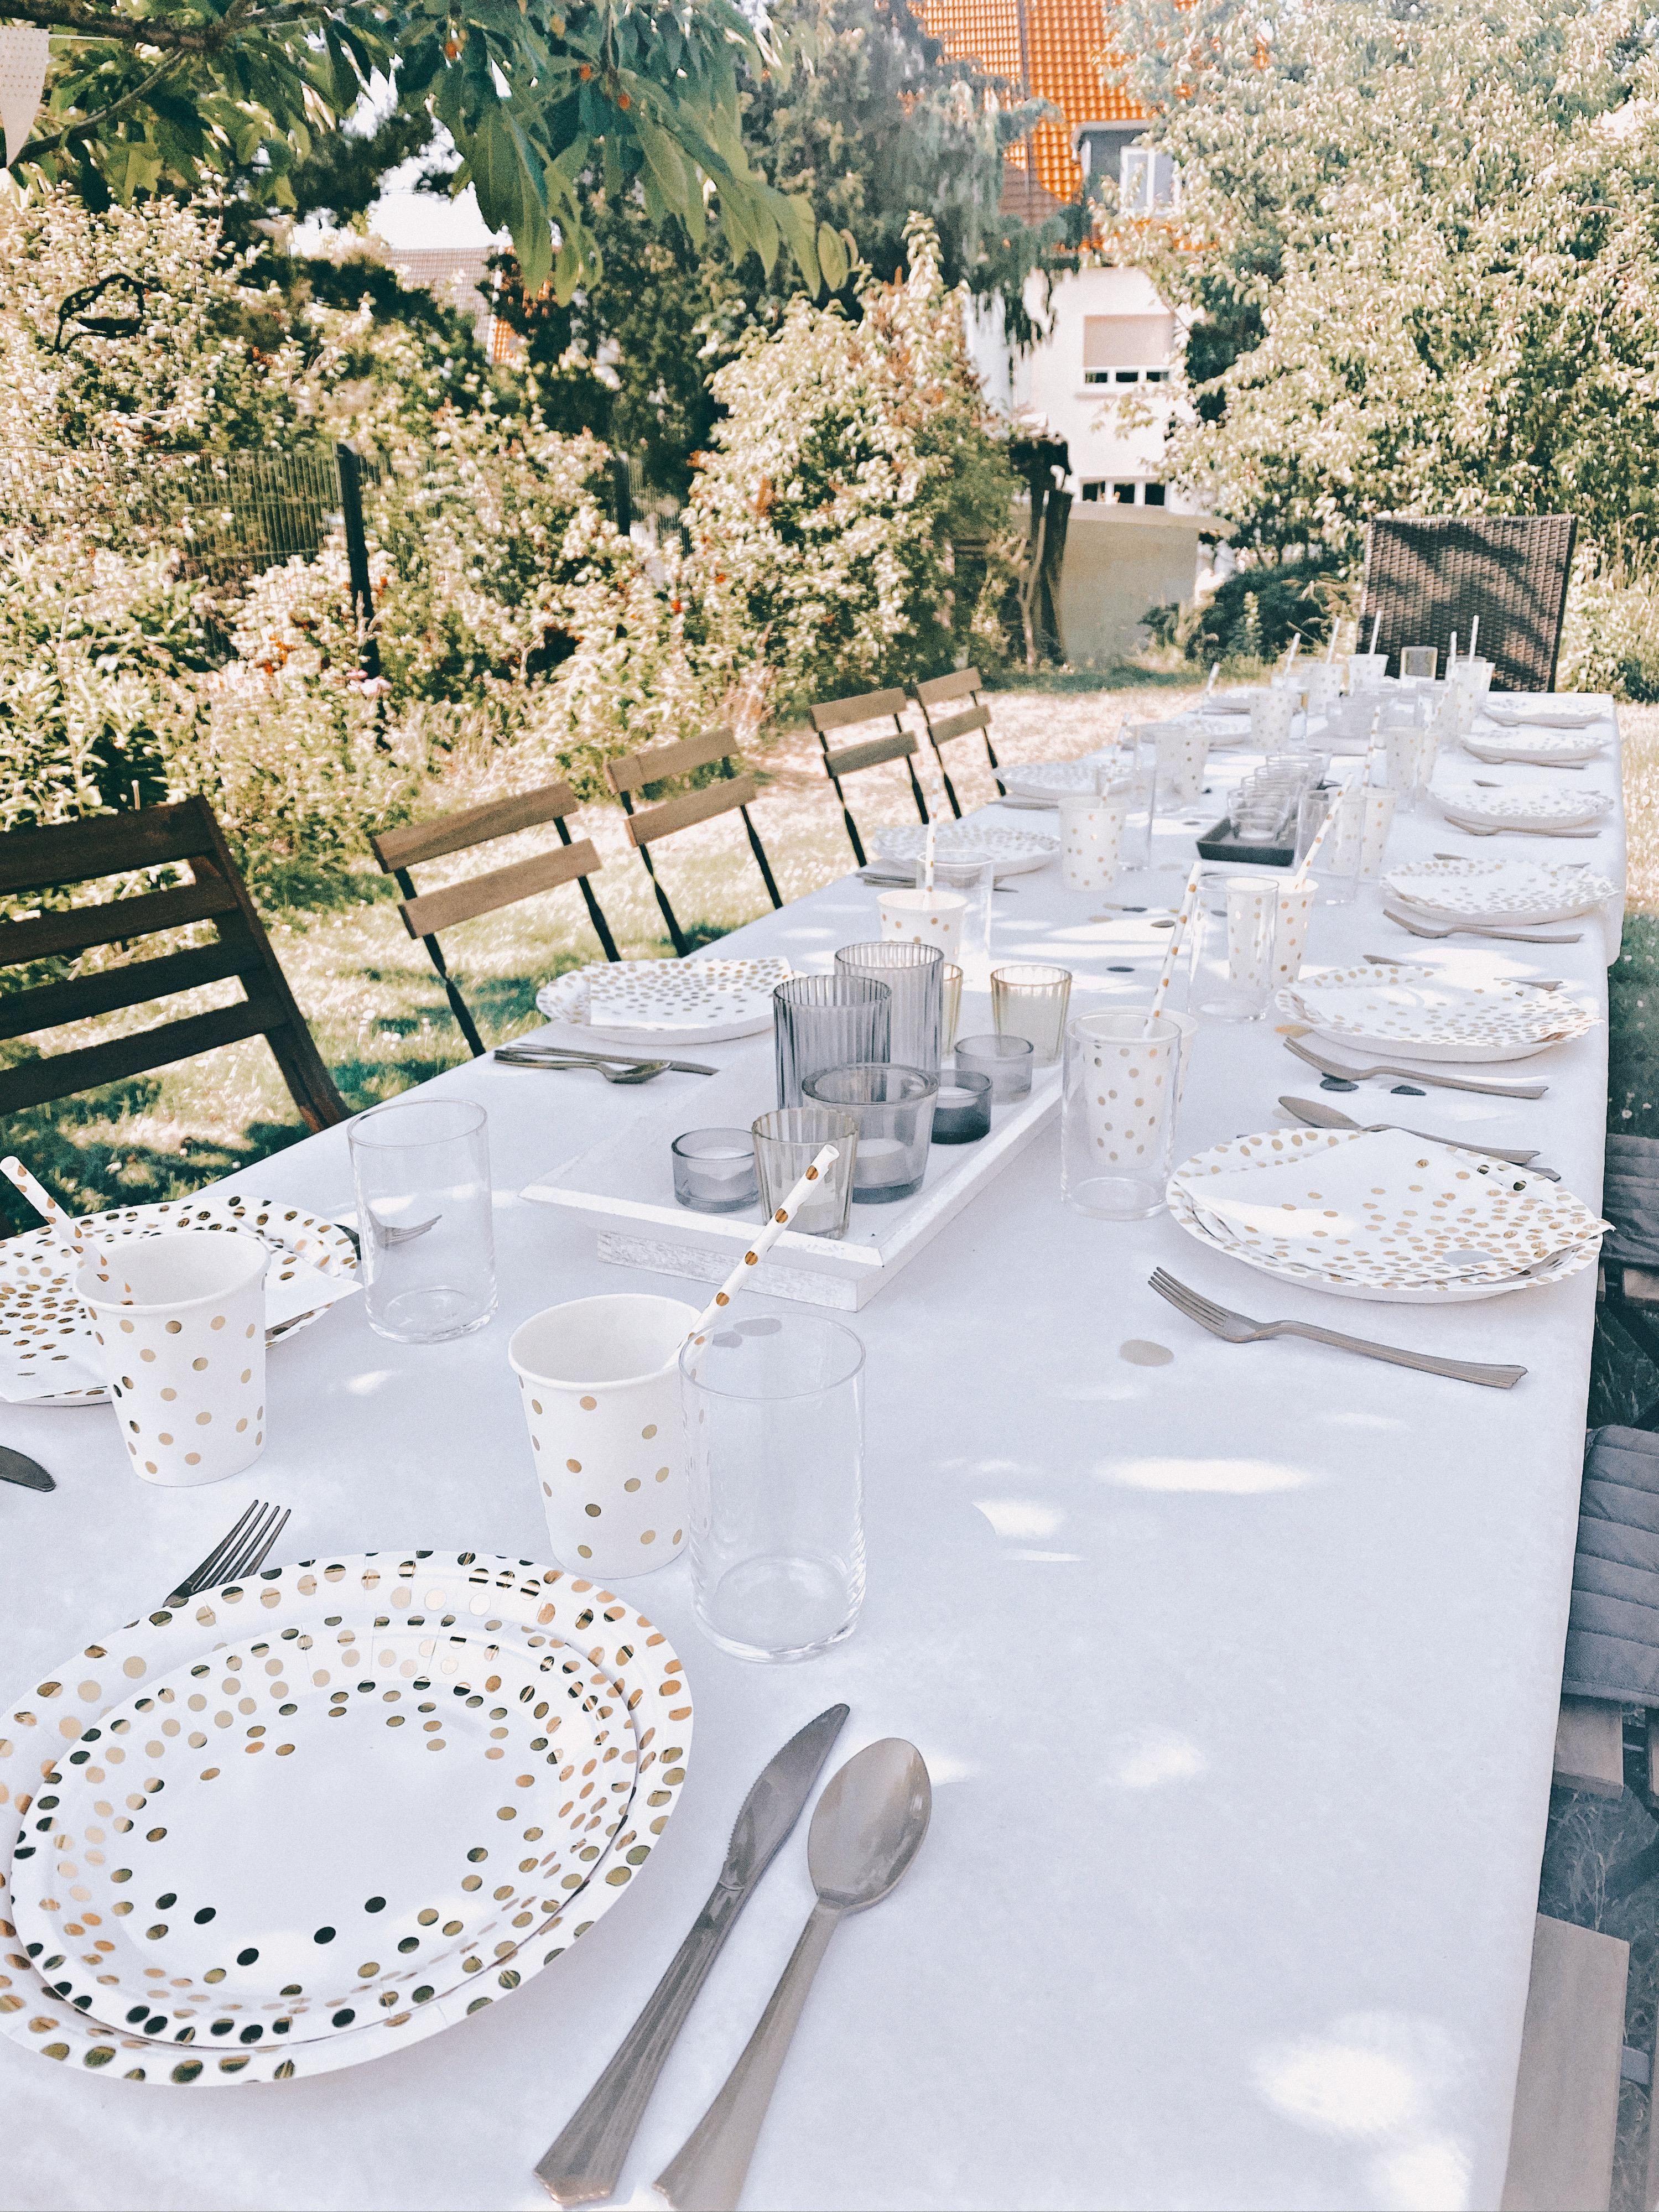 Simpel und schön - Tischdeko für den Grillabend 
#tischdeko#grillabend#weißgold